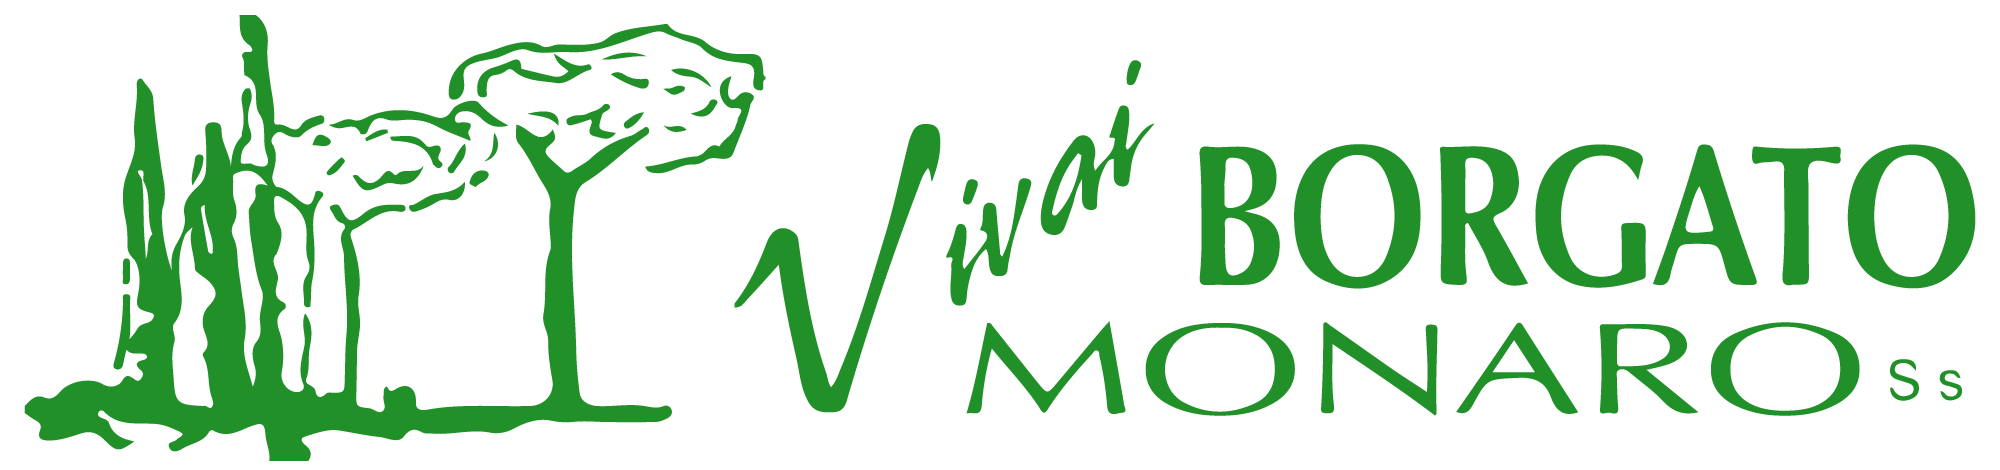 Vivai Borgato Monaro Logo